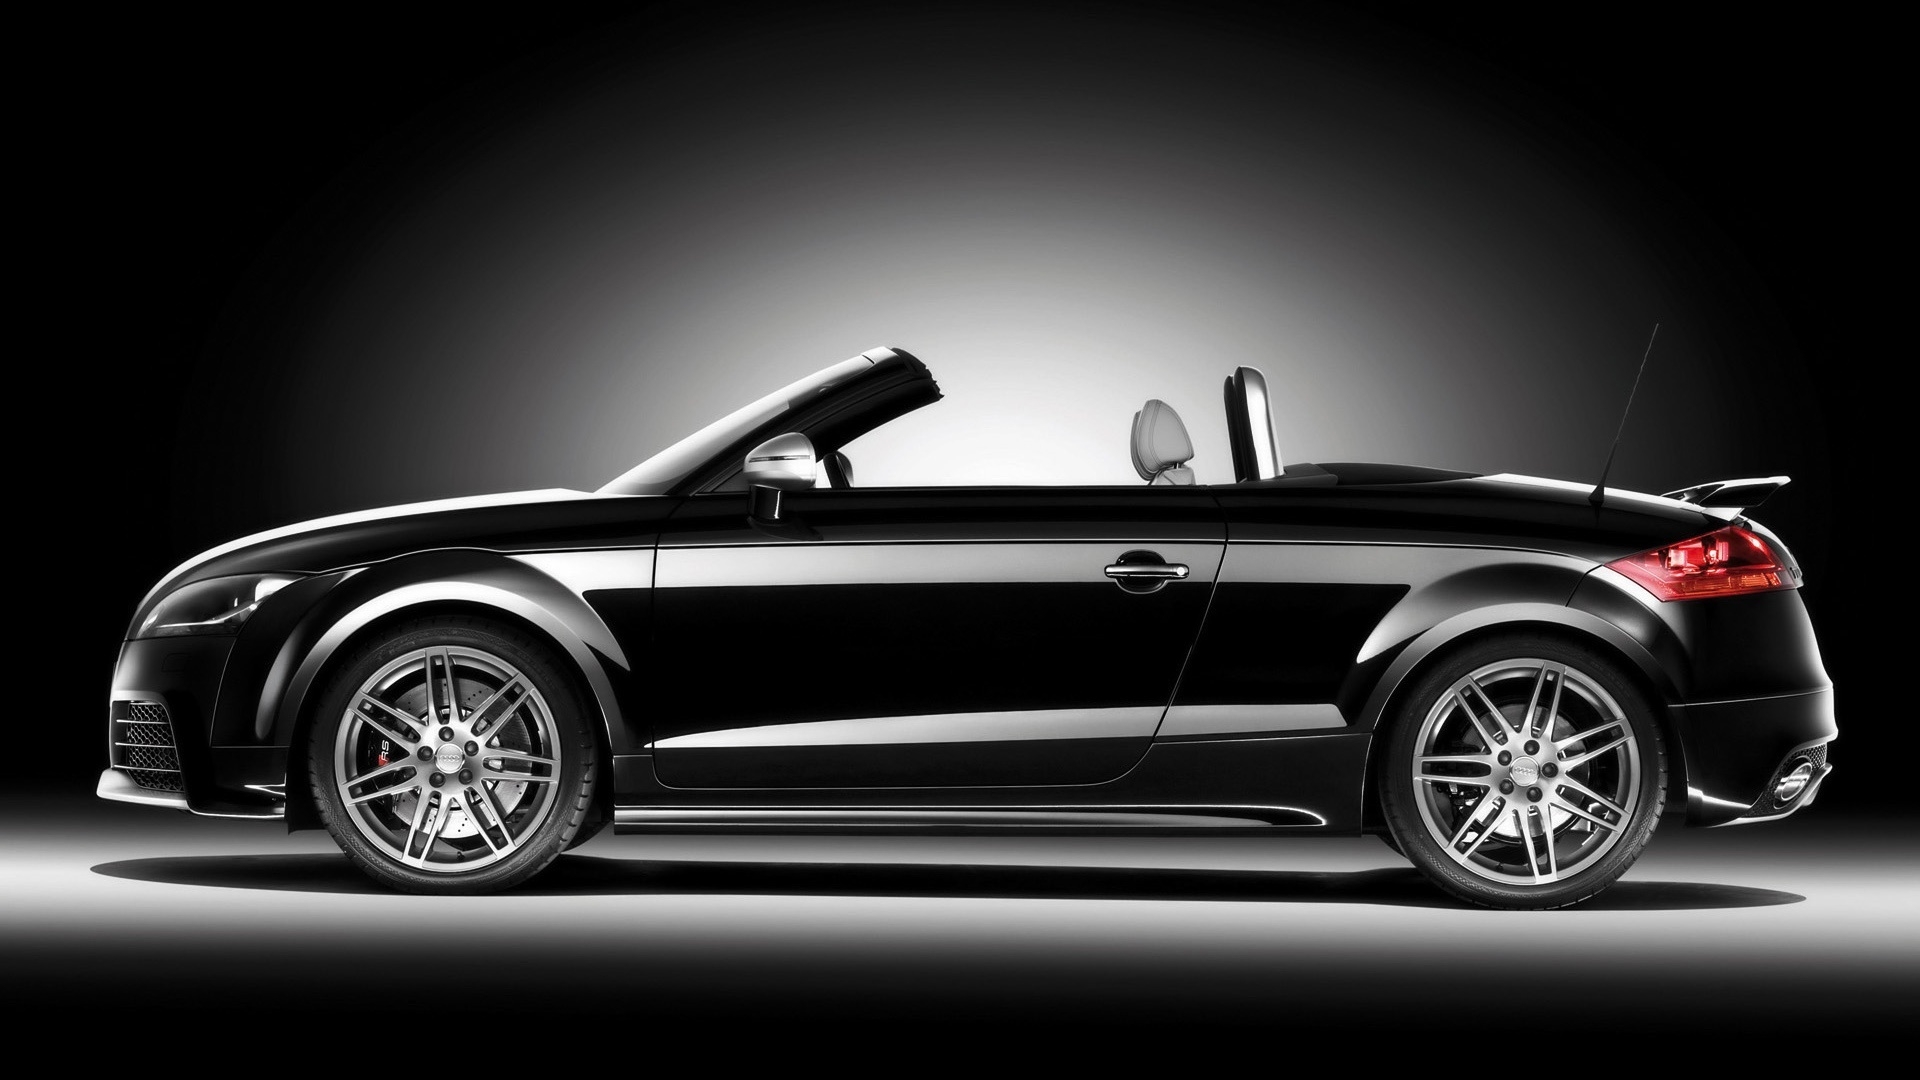 2009 Audi TT RS Roadster Black Side for 1920 x 1080 HDTV 1080p resolution